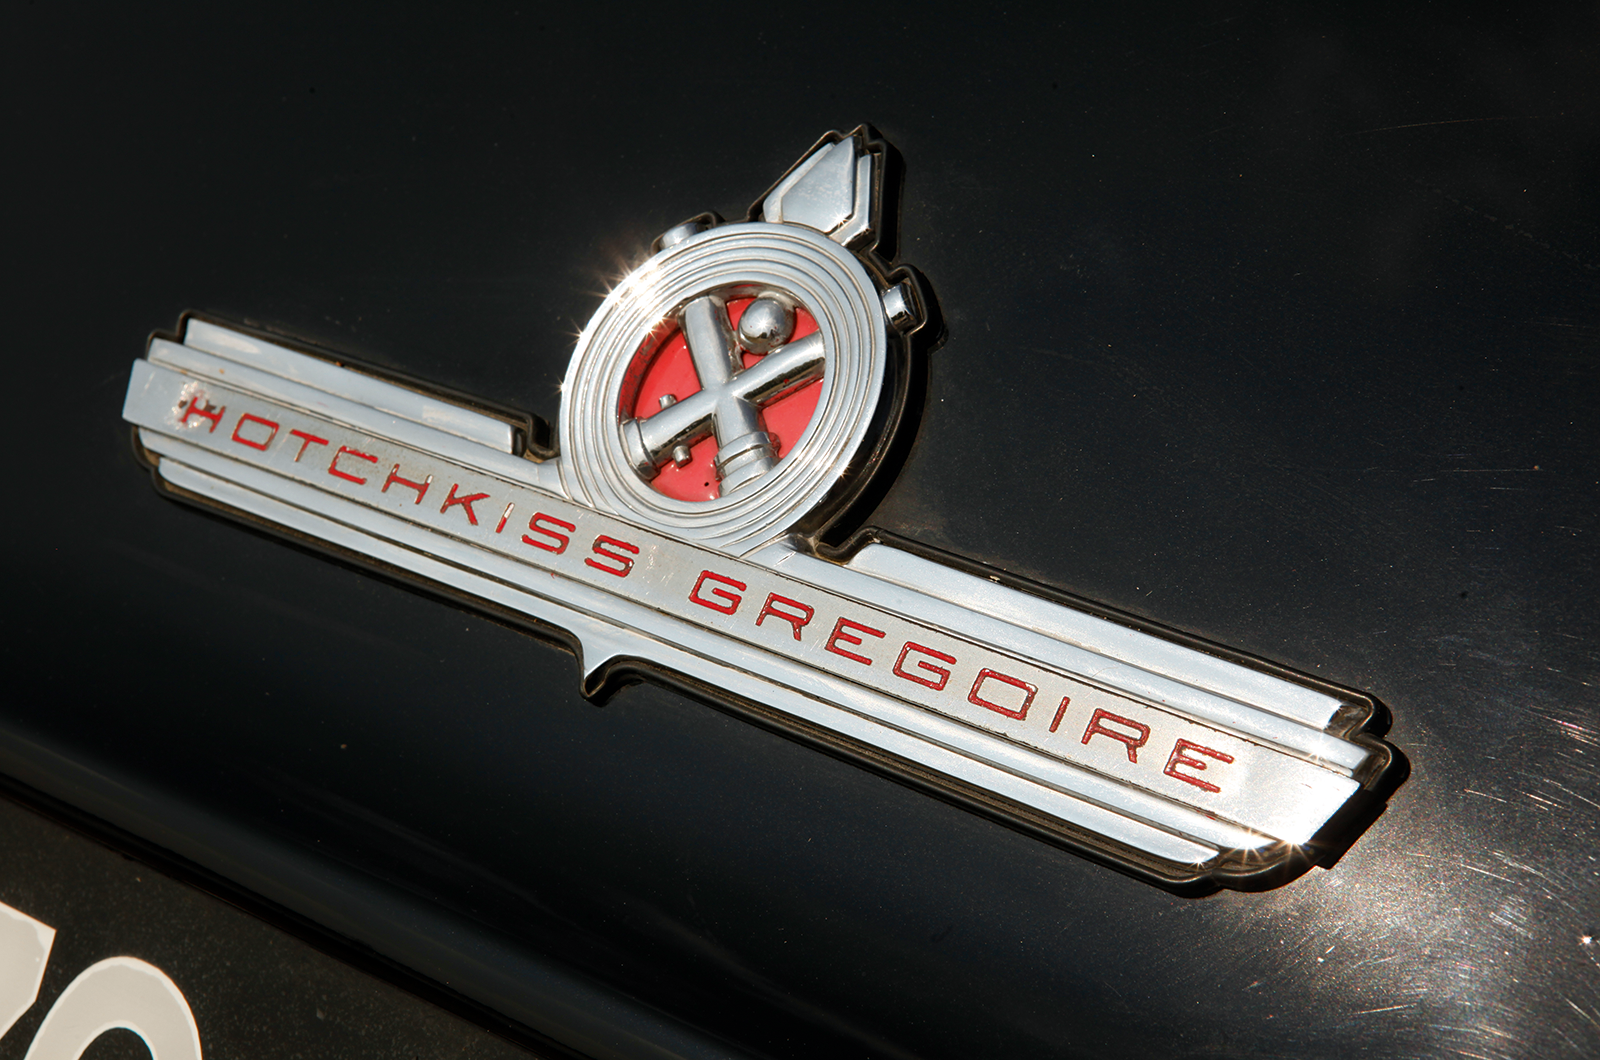 Classic & Sports Car – Hotchkiss-Grégoire: fooled again